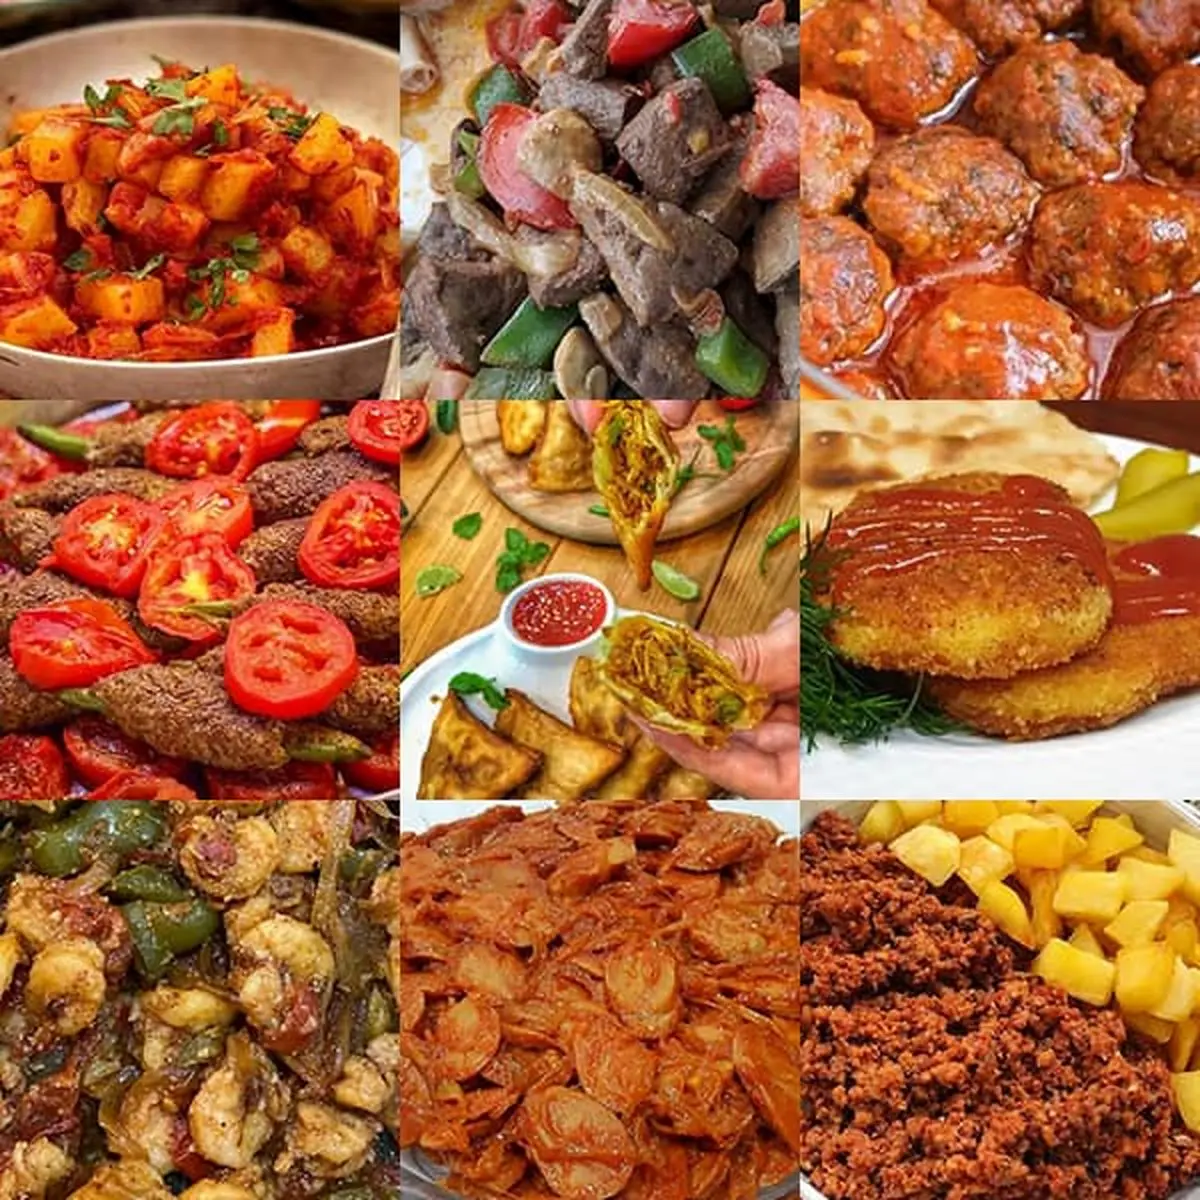 آموزش غذاهای ایرانی بدون برنج ساده و مجلسی/ یک لیست بلند بالا